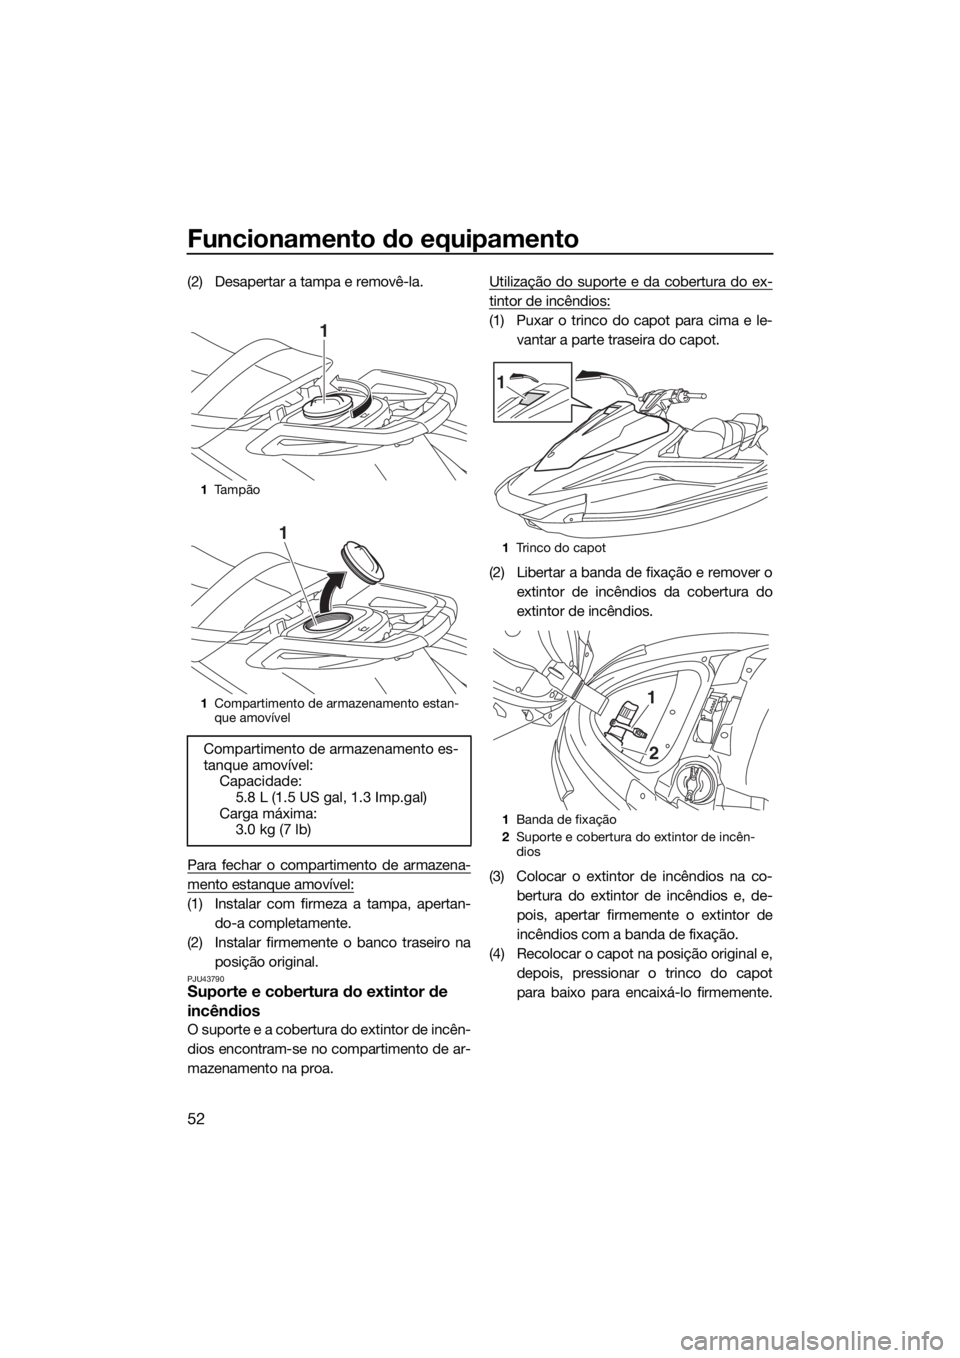 YAMAHA VX 2018  Manual de utilização (in Portuguese) Funcionamento do equipamento
52
(2) Desapertar a tampa e removê-la.
Para fechar o compartimento de armazena-
mento estanque amovível:
(1) Instalar com firmeza a tampa, apertan-
do-a completamente.
(